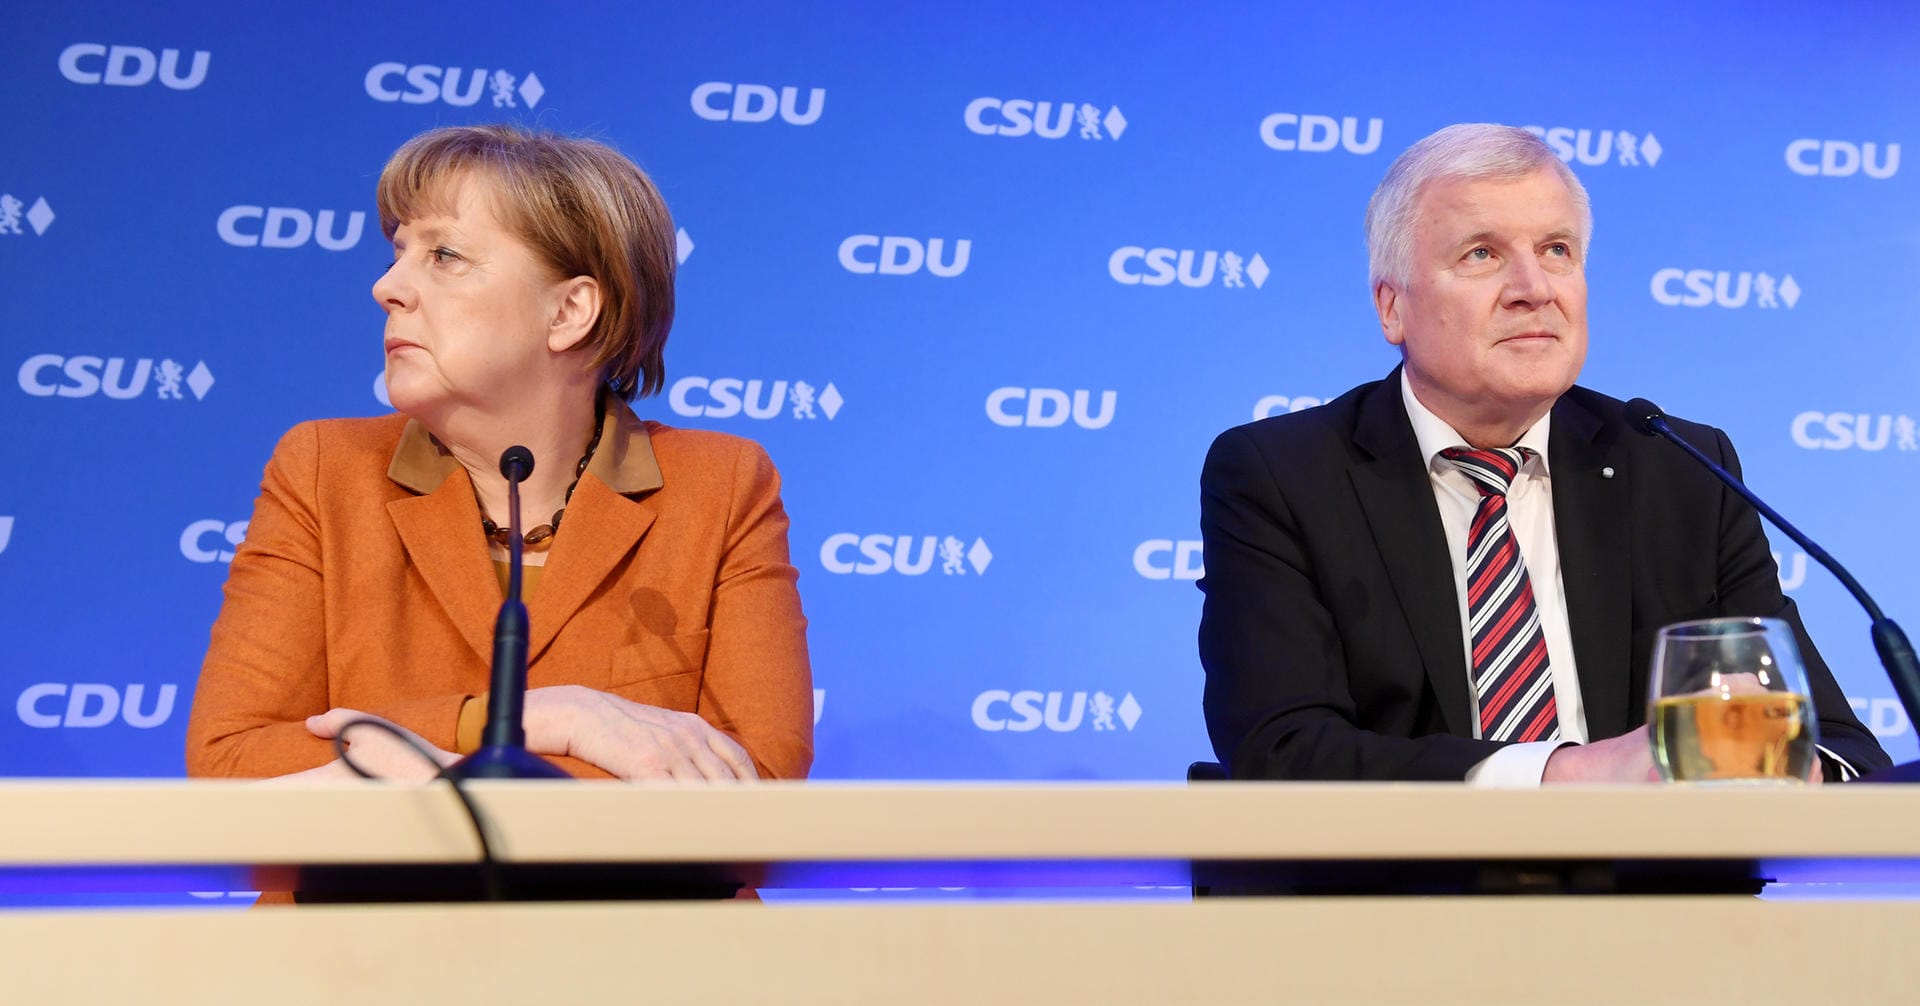 Zwei verschiedene Richtungen: Merkel und Seehofer nach dem Spitzentreffen von CDU und CSU im Februar 2017 bei einer Pressekonferenz.